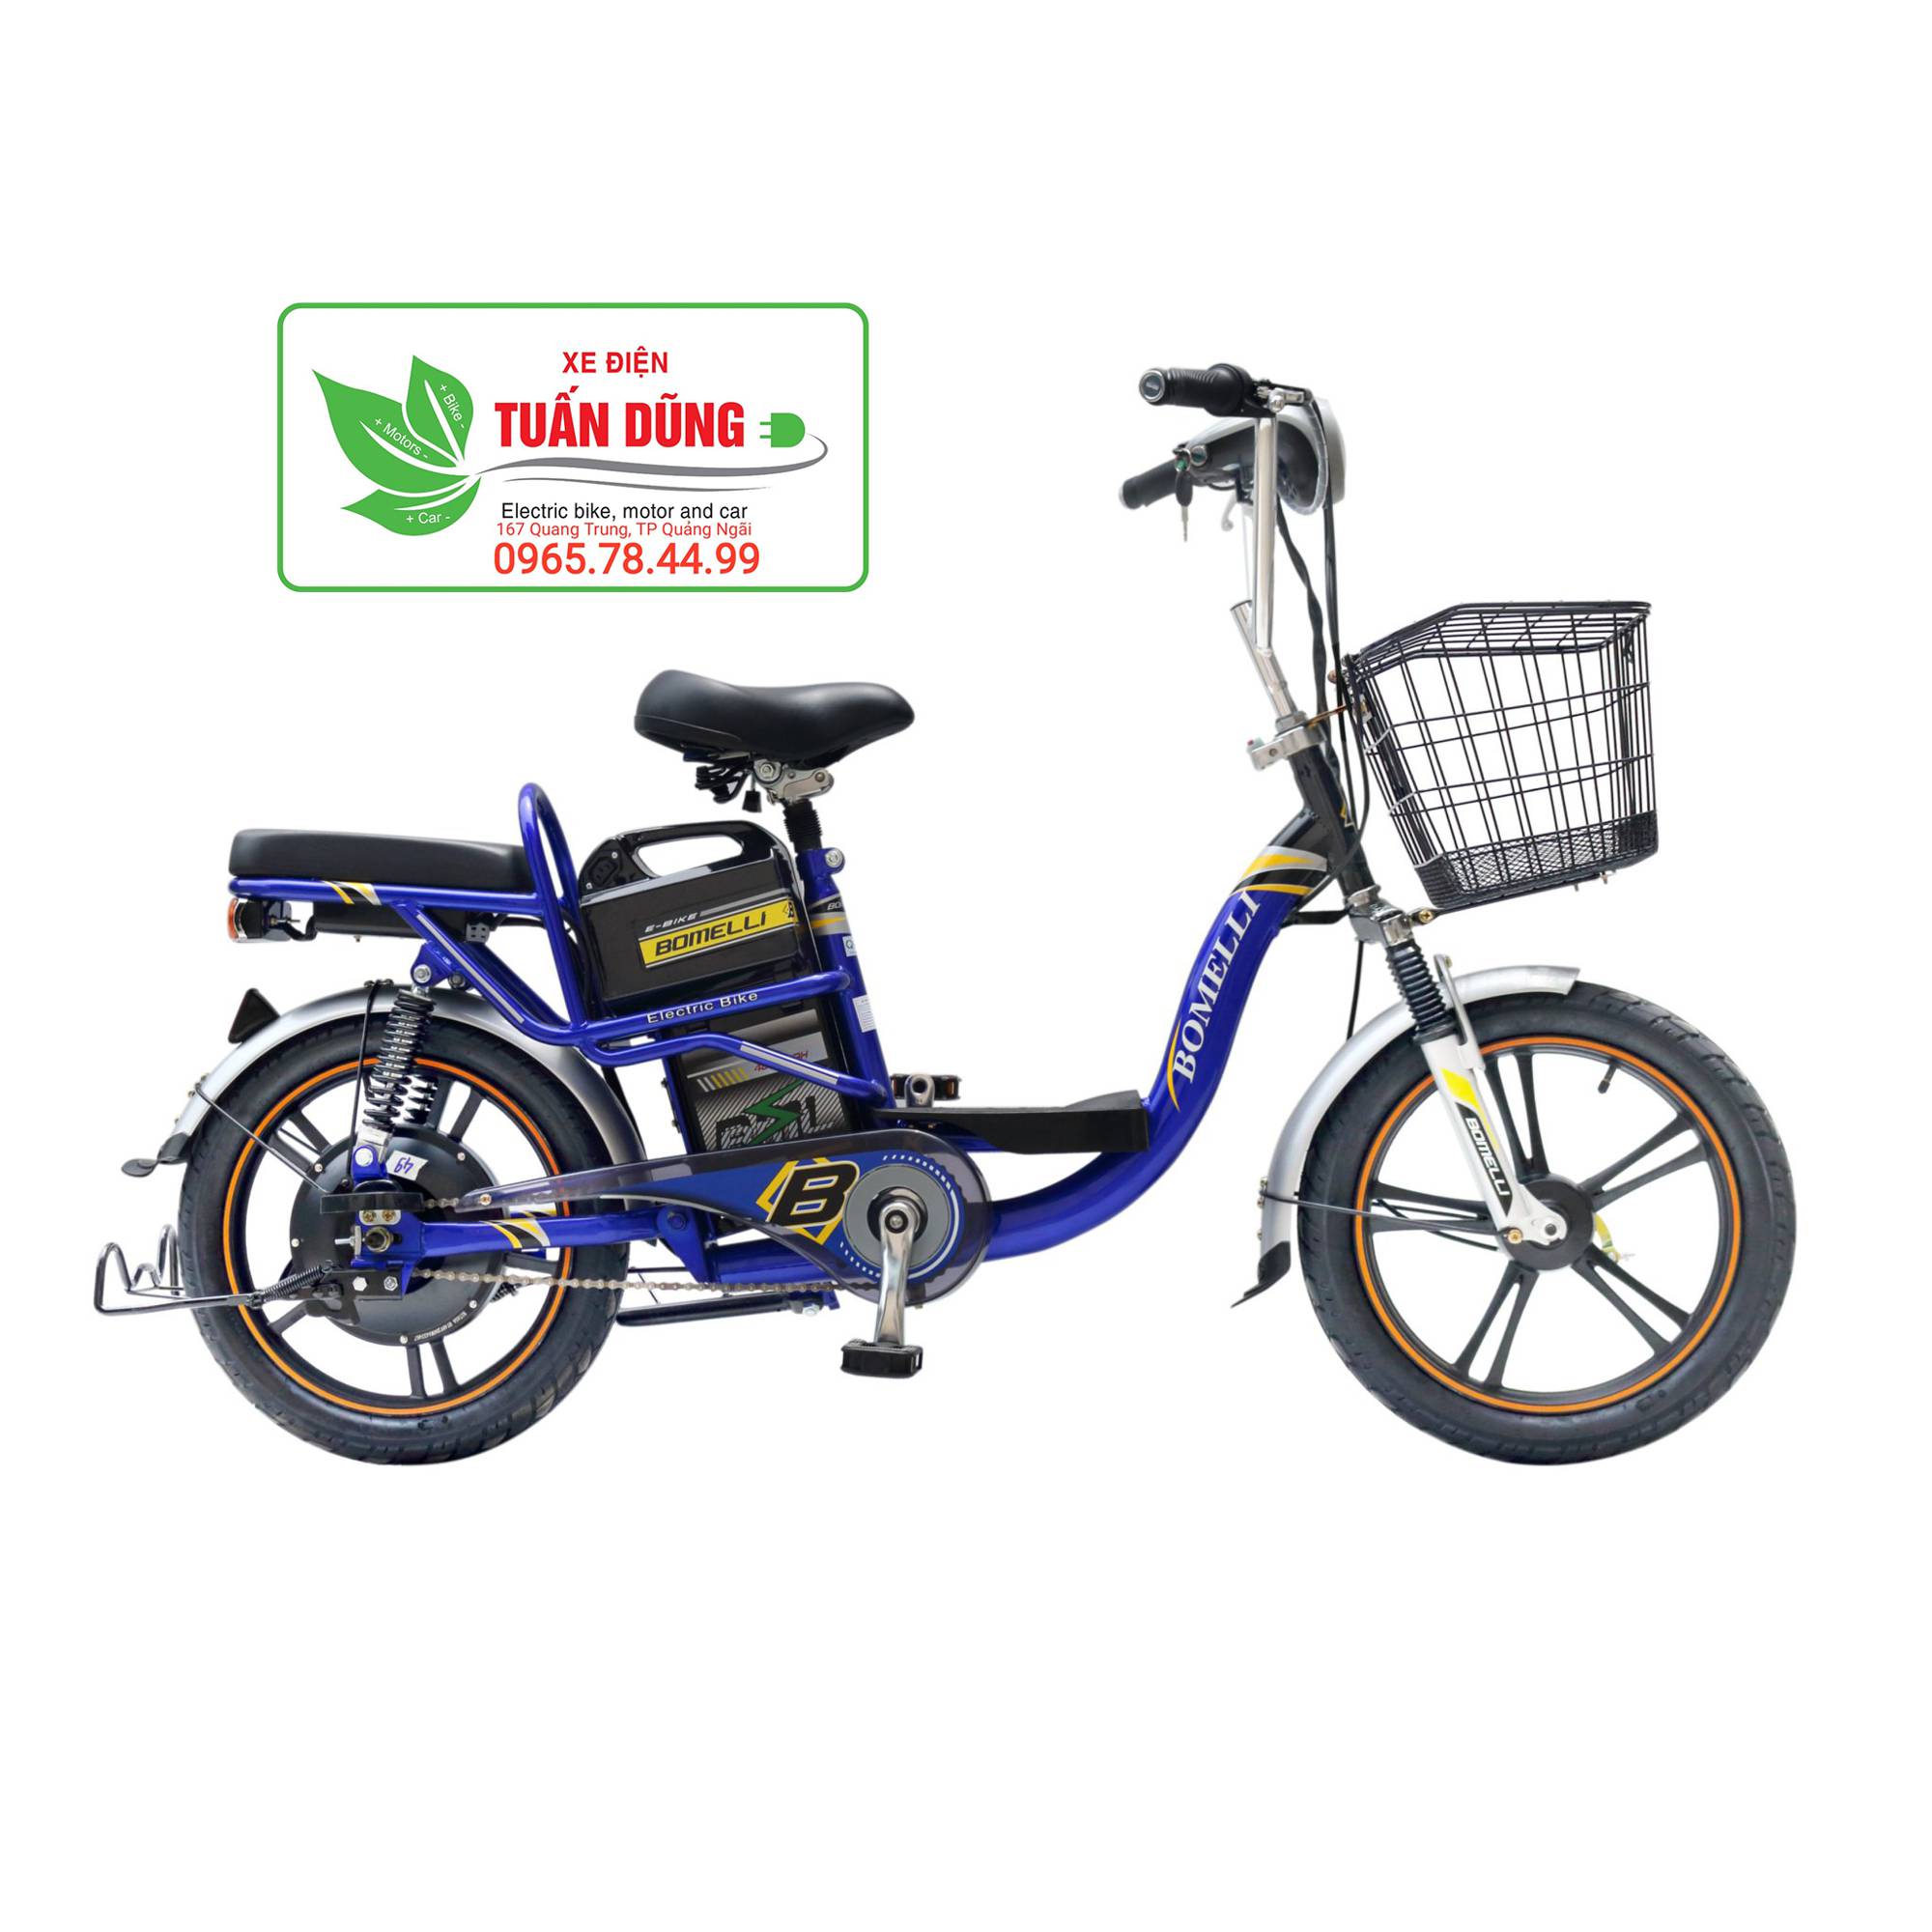 Cửa hàng xe đạp điện chính hãng khu vực Quảng Ngãi